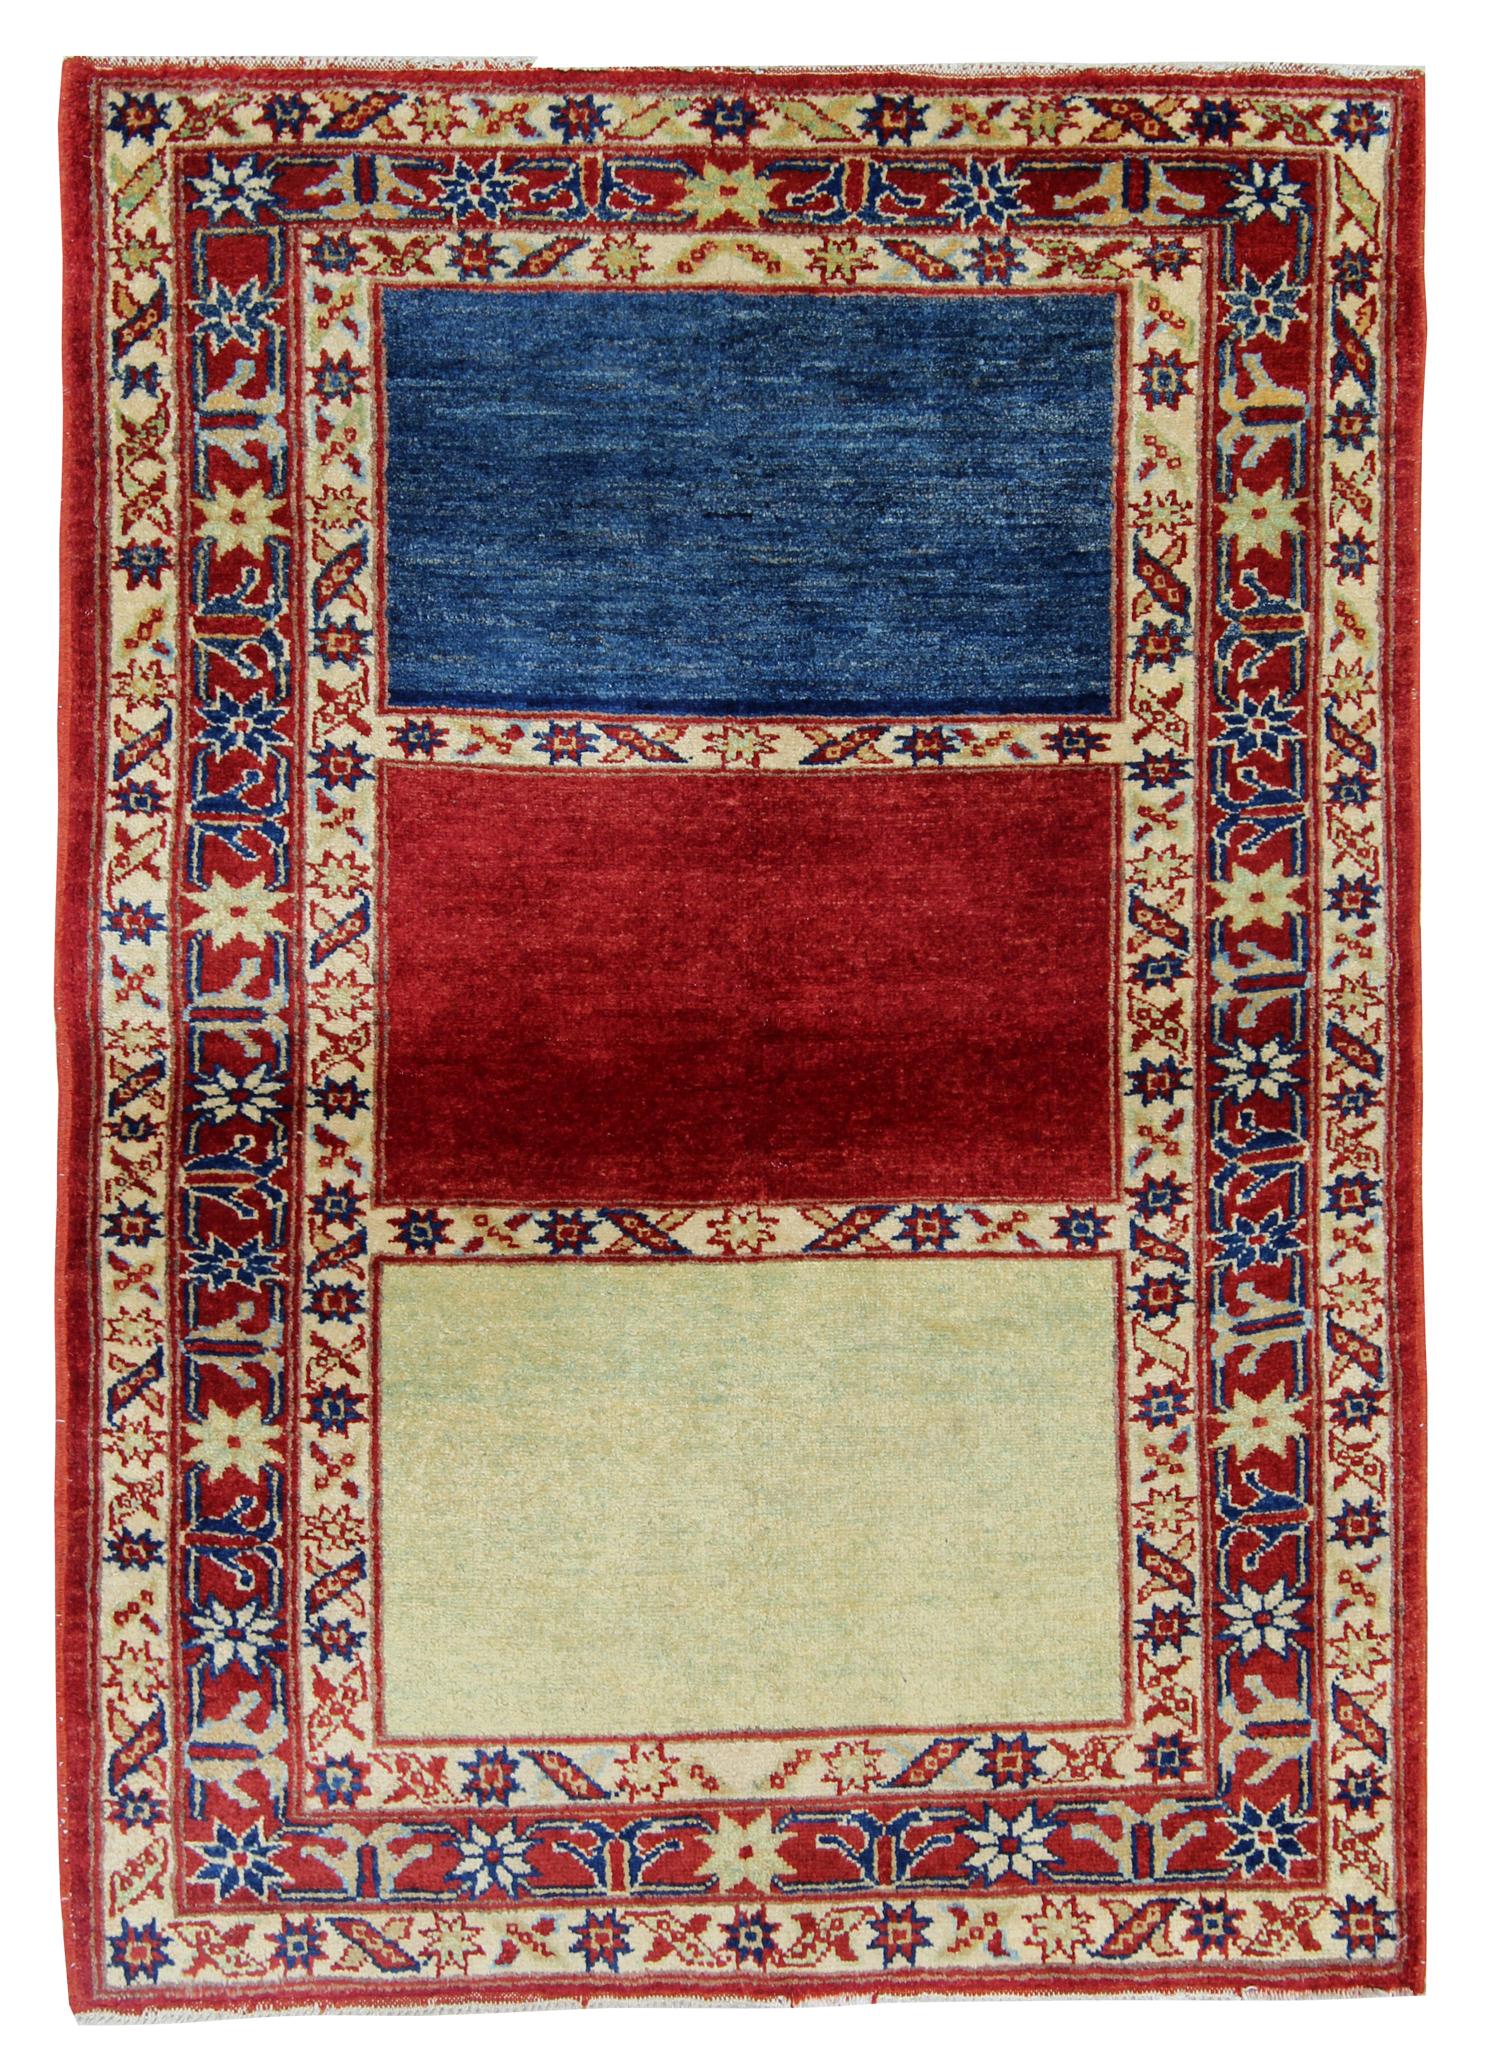 Diese handgefertigten Teppiche sind handgewebte Teppiche in auffälligen Farbkombinationen. Dieser gestreifte Teppich ist in den Farben Rot, Blau und Gelb gehalten. Das Muster an der Bordüre des Teppichs ist von kaukasischen Mustern beeinflusst.